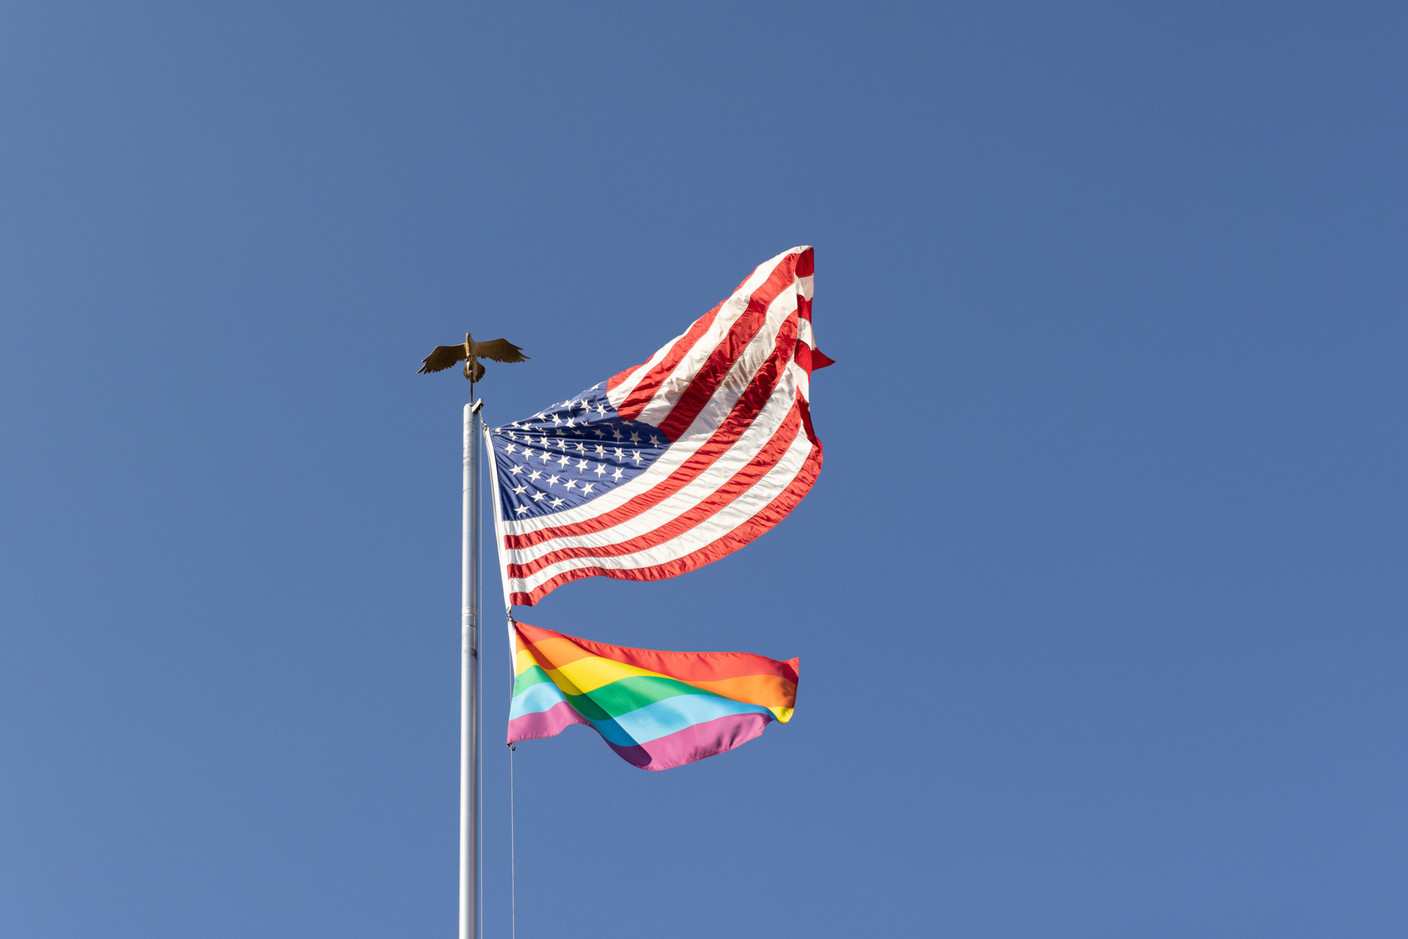 The US flag flown along side the pride flag over the ambassador’s residence Romain Gamba/Maison Moderne